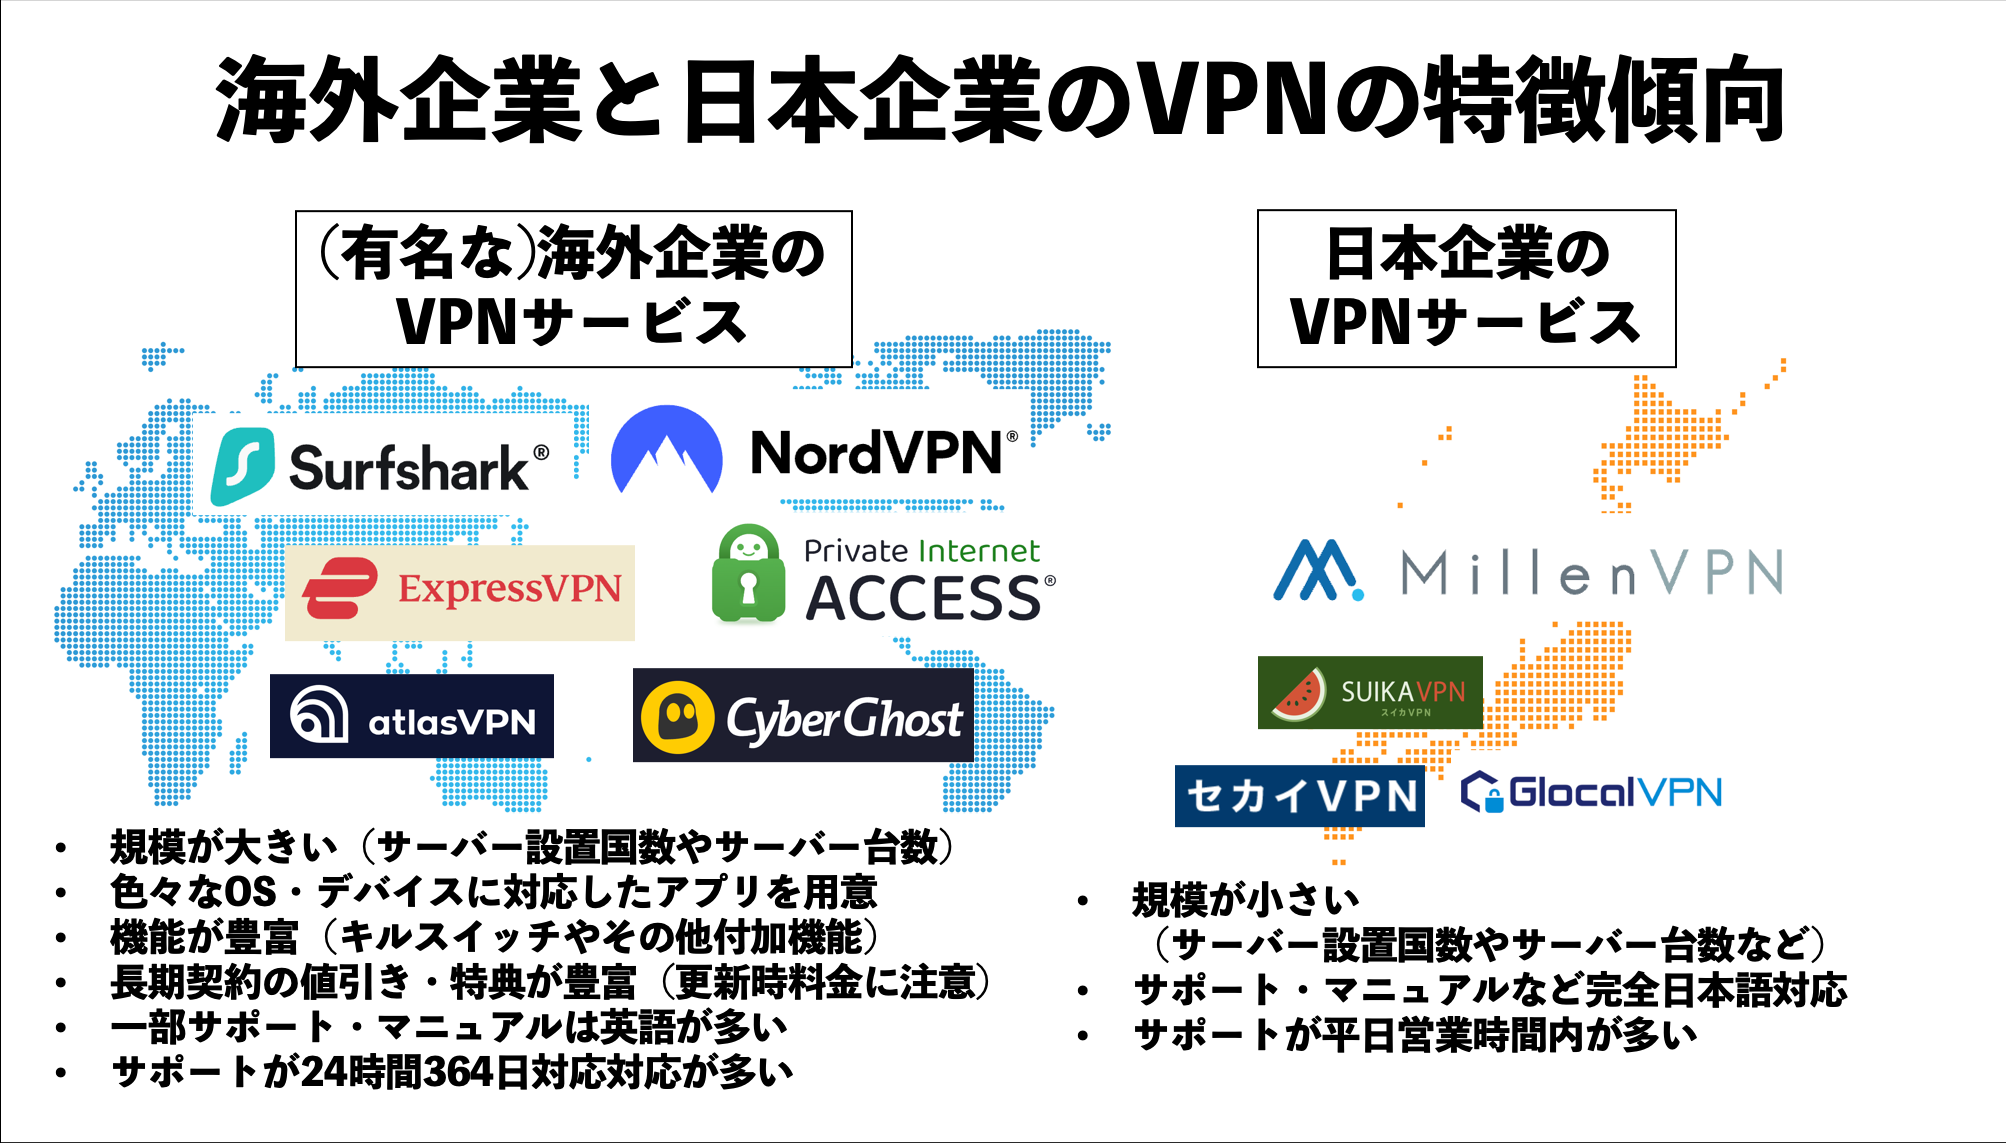 海外企業と日本企業のVPNの特徴傾向